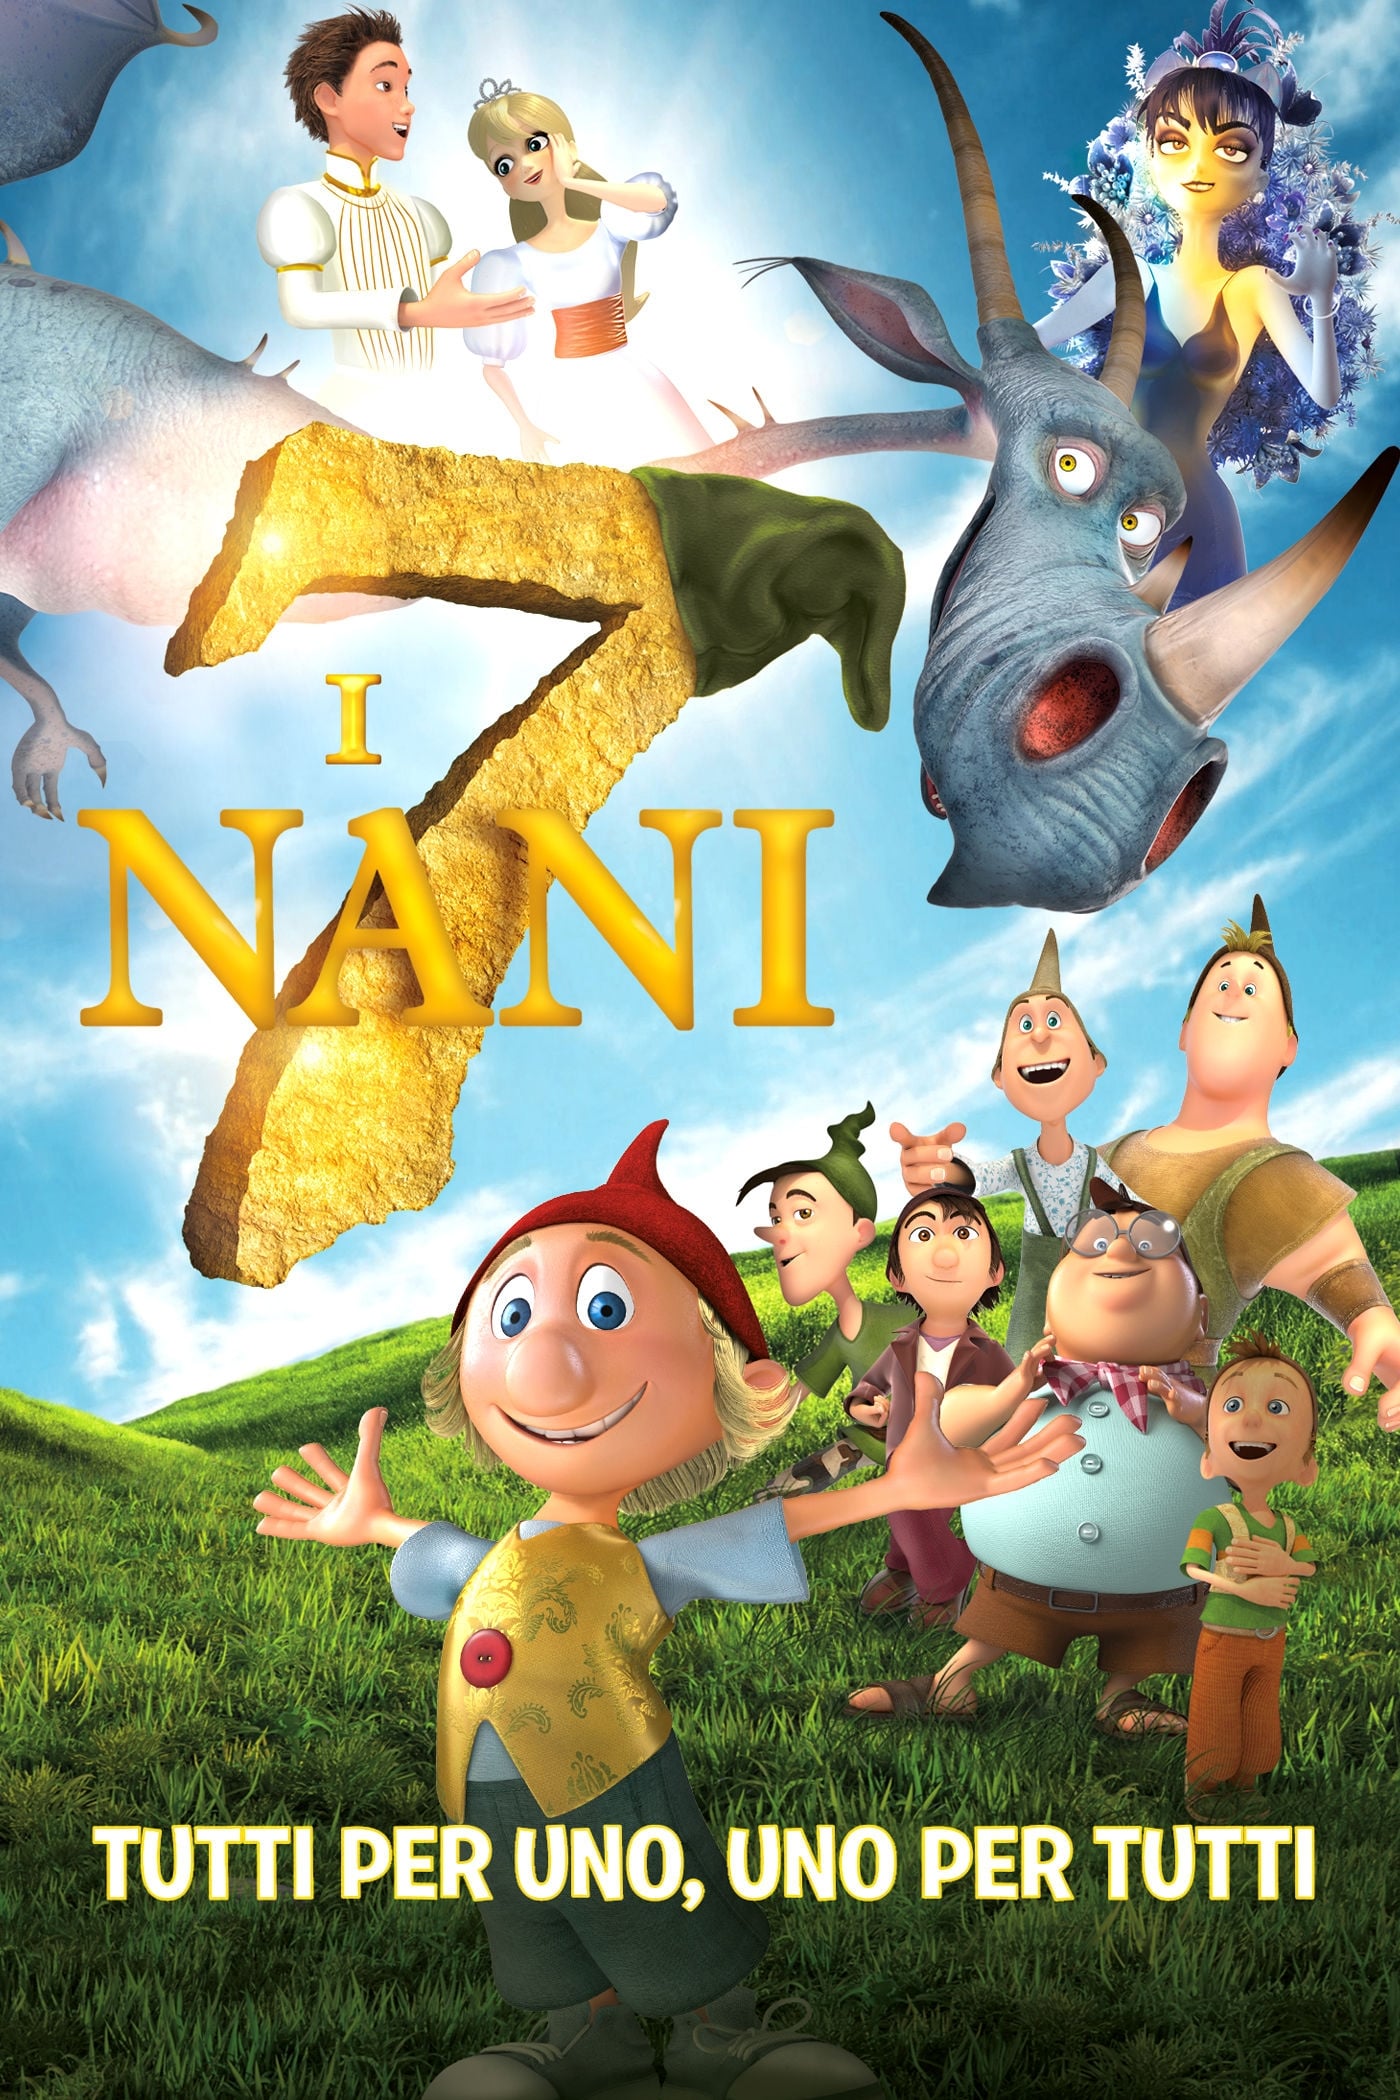 I 7 nani [HD] (2015)